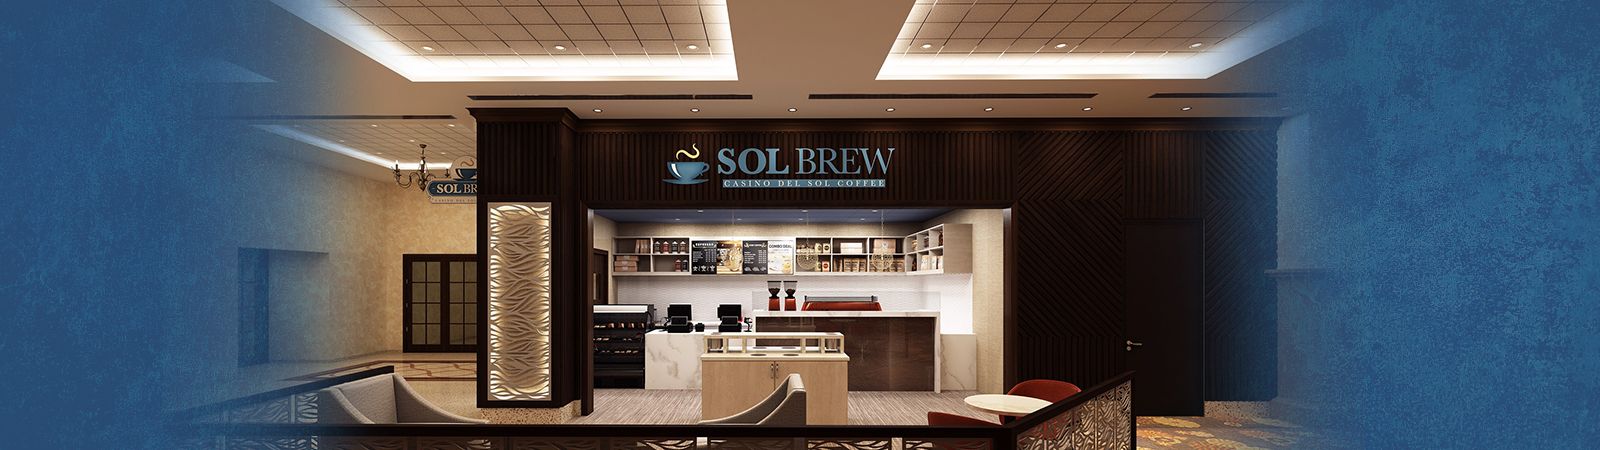 Sol Brew at Casino Del Sol 